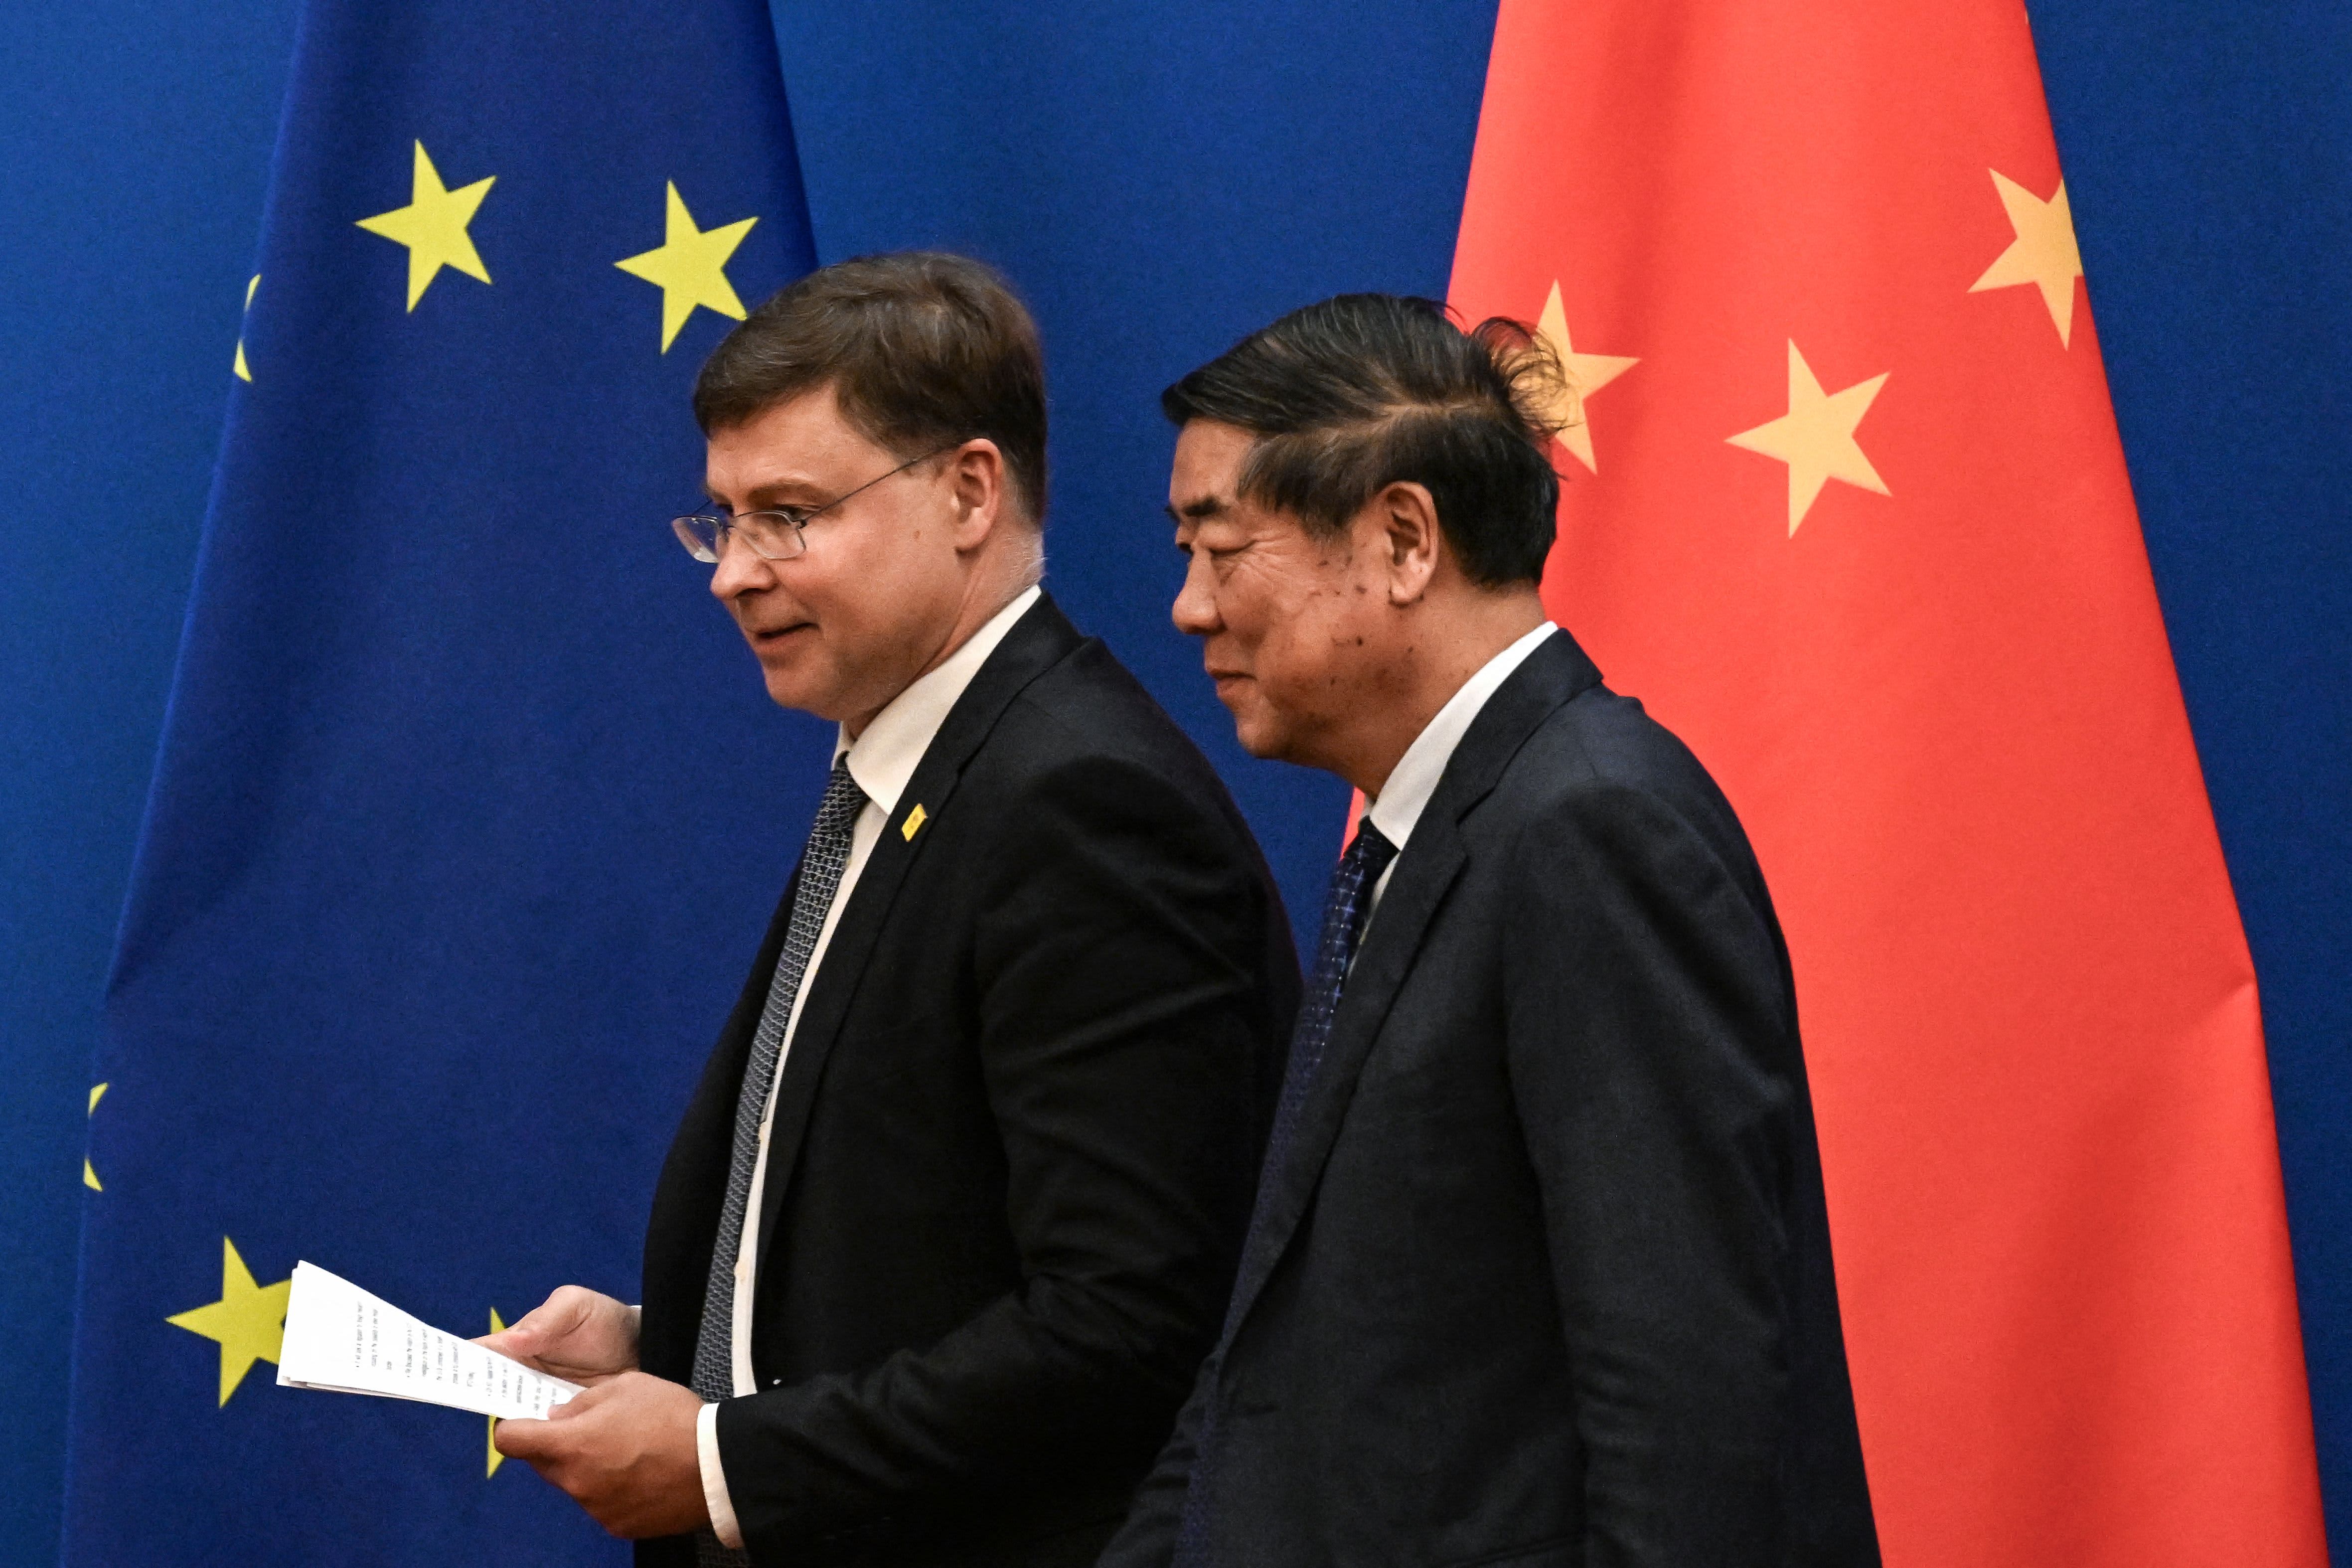 유럽연합(EU) 무역담당 집행위원은 중국 내 전기차 조사 결과를 미리 판단할 수 없다고 밝혔다.